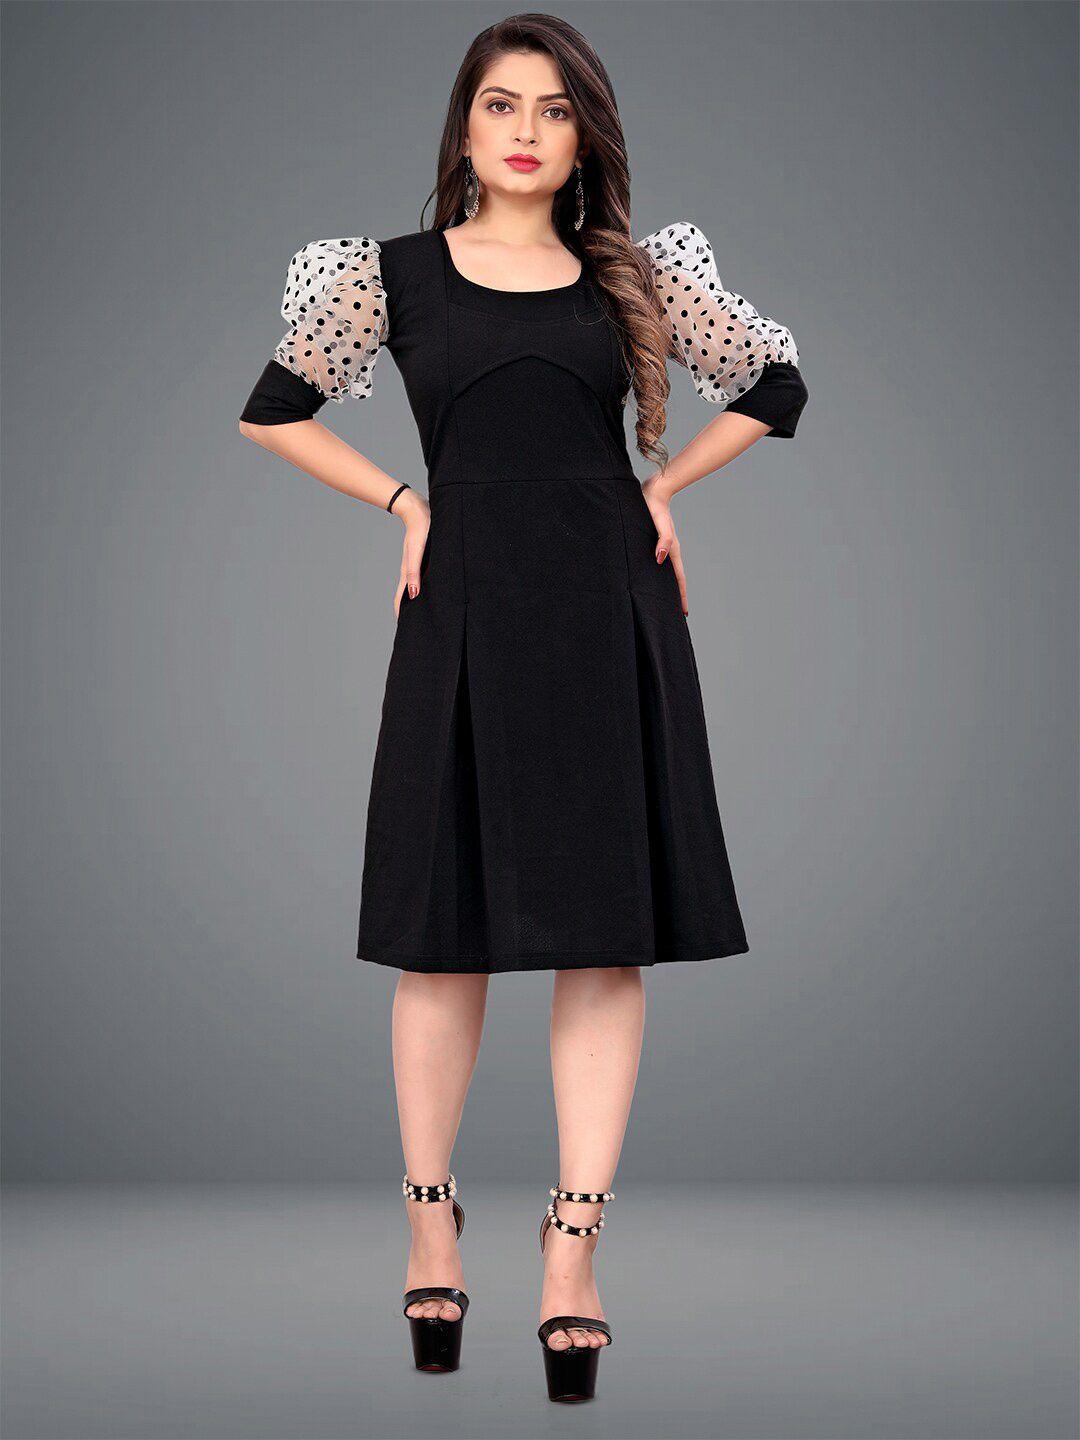 deklook-black-puff-sleeve-fit-&-flare-dress